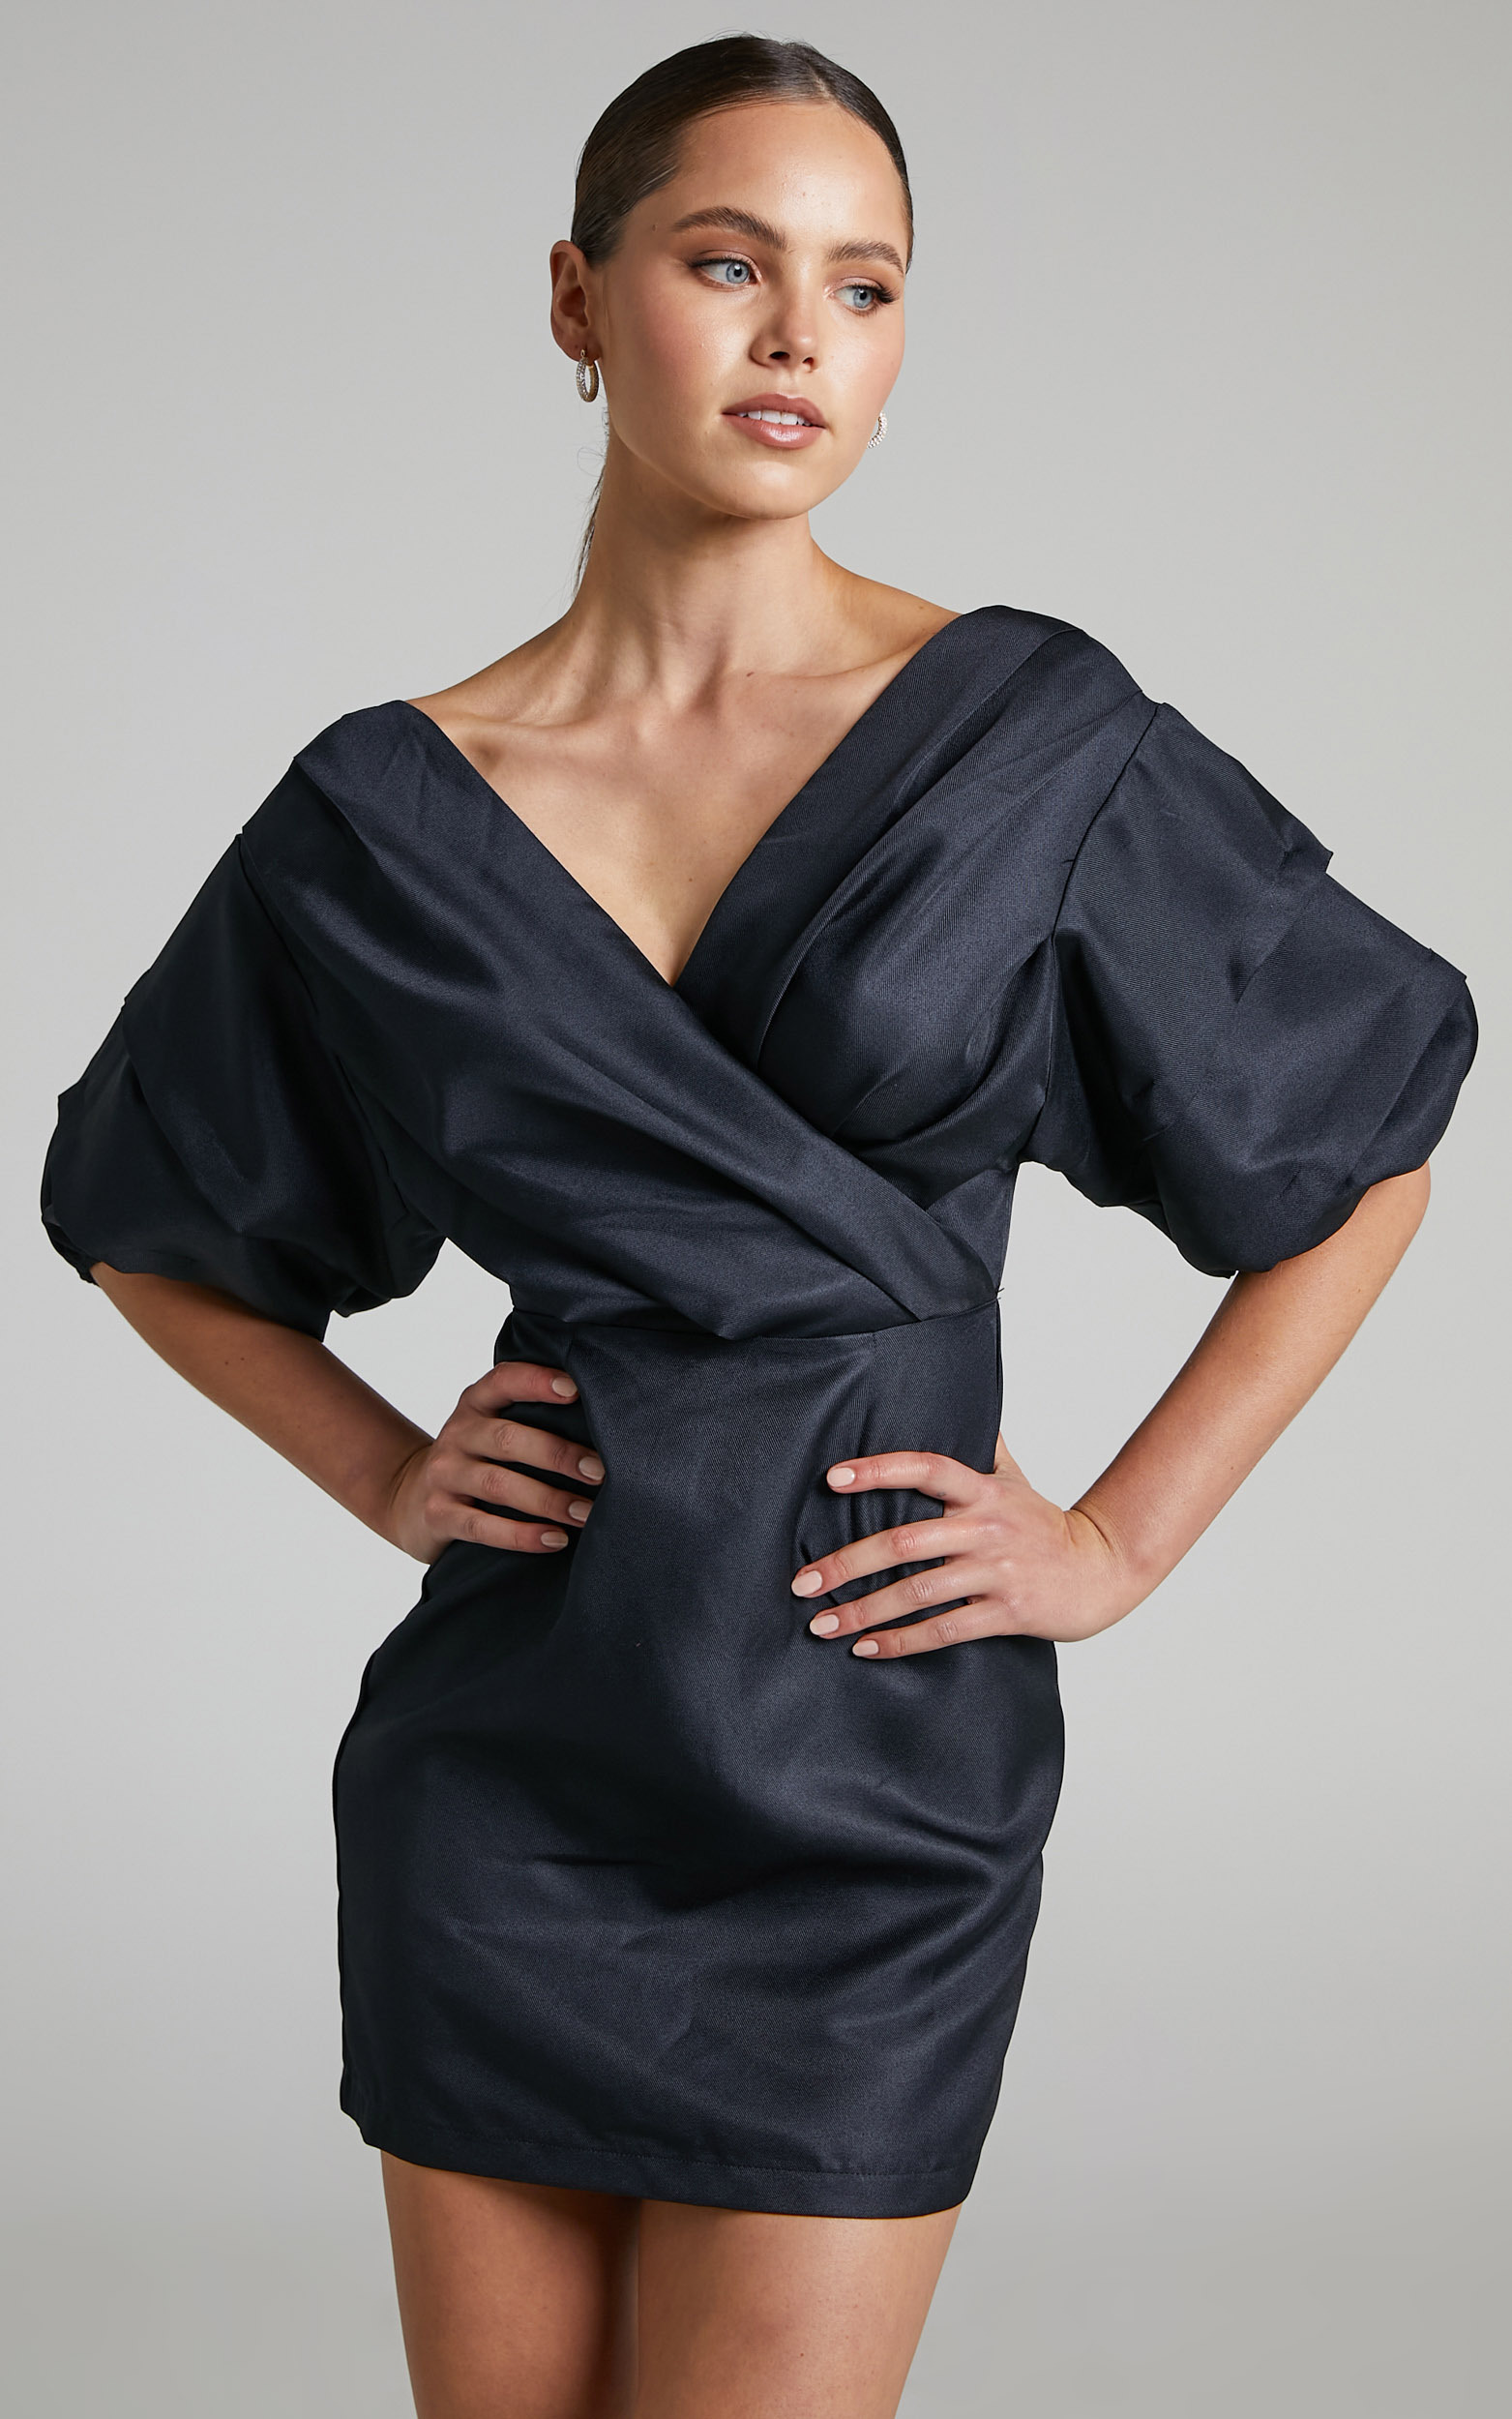 Anastasija Mini Dress - Off Shoulder V Neck Dress in Black - 06, BLK1, hi-res image number null